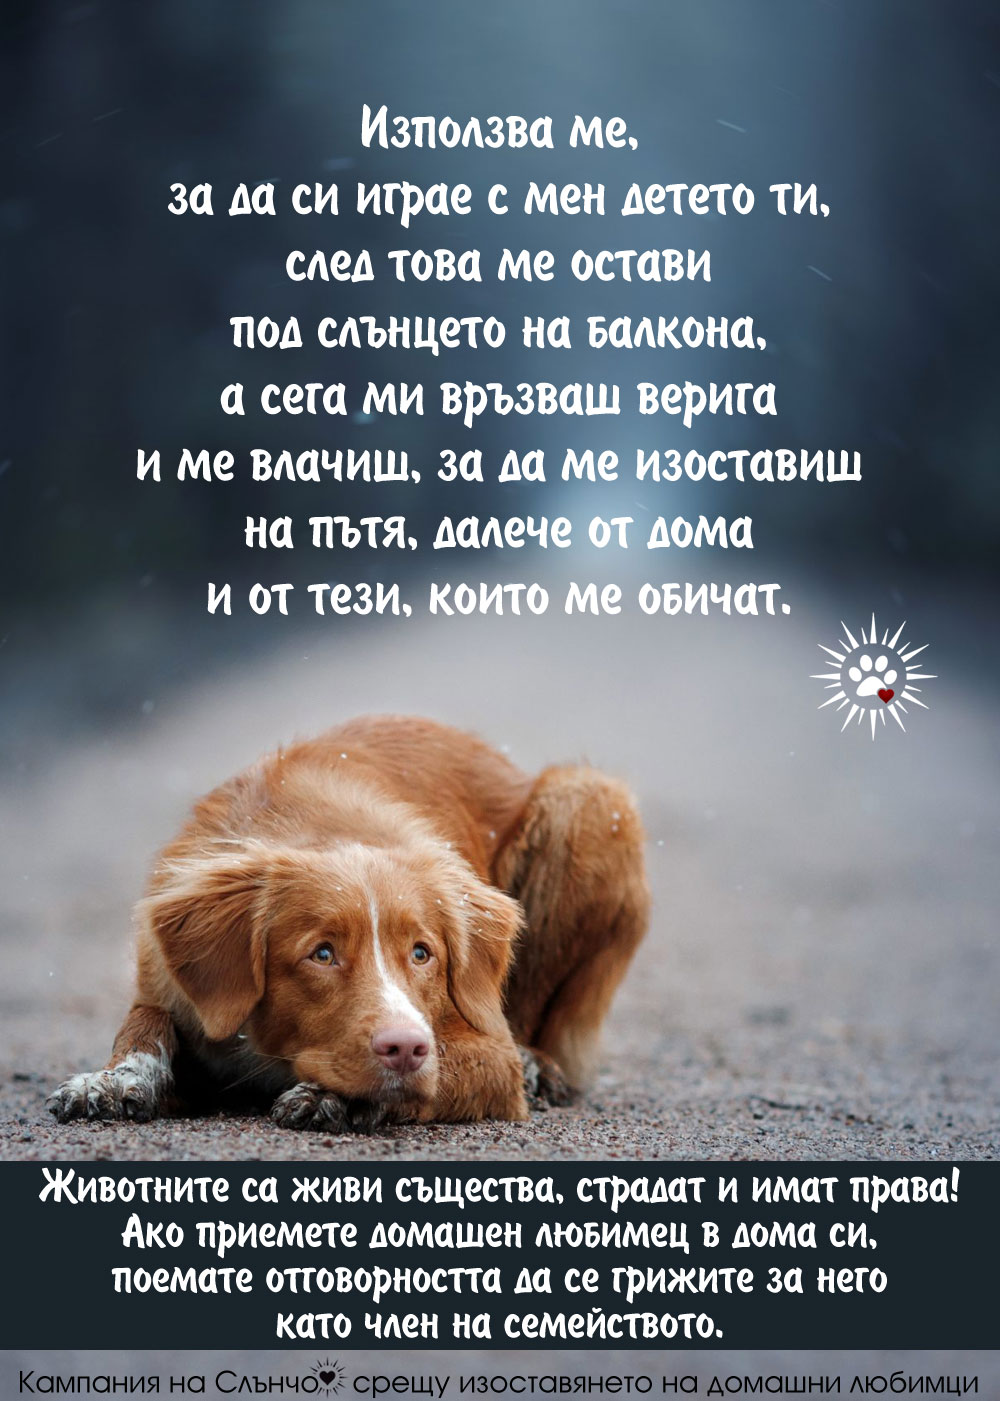 Кучето е член на семейството - Кампания на слънчо срещу изоставянето на домашни любимци - кучето е най-добрият приятел на човека, не го изоставяй и не го наранявай - Защита правата на животните